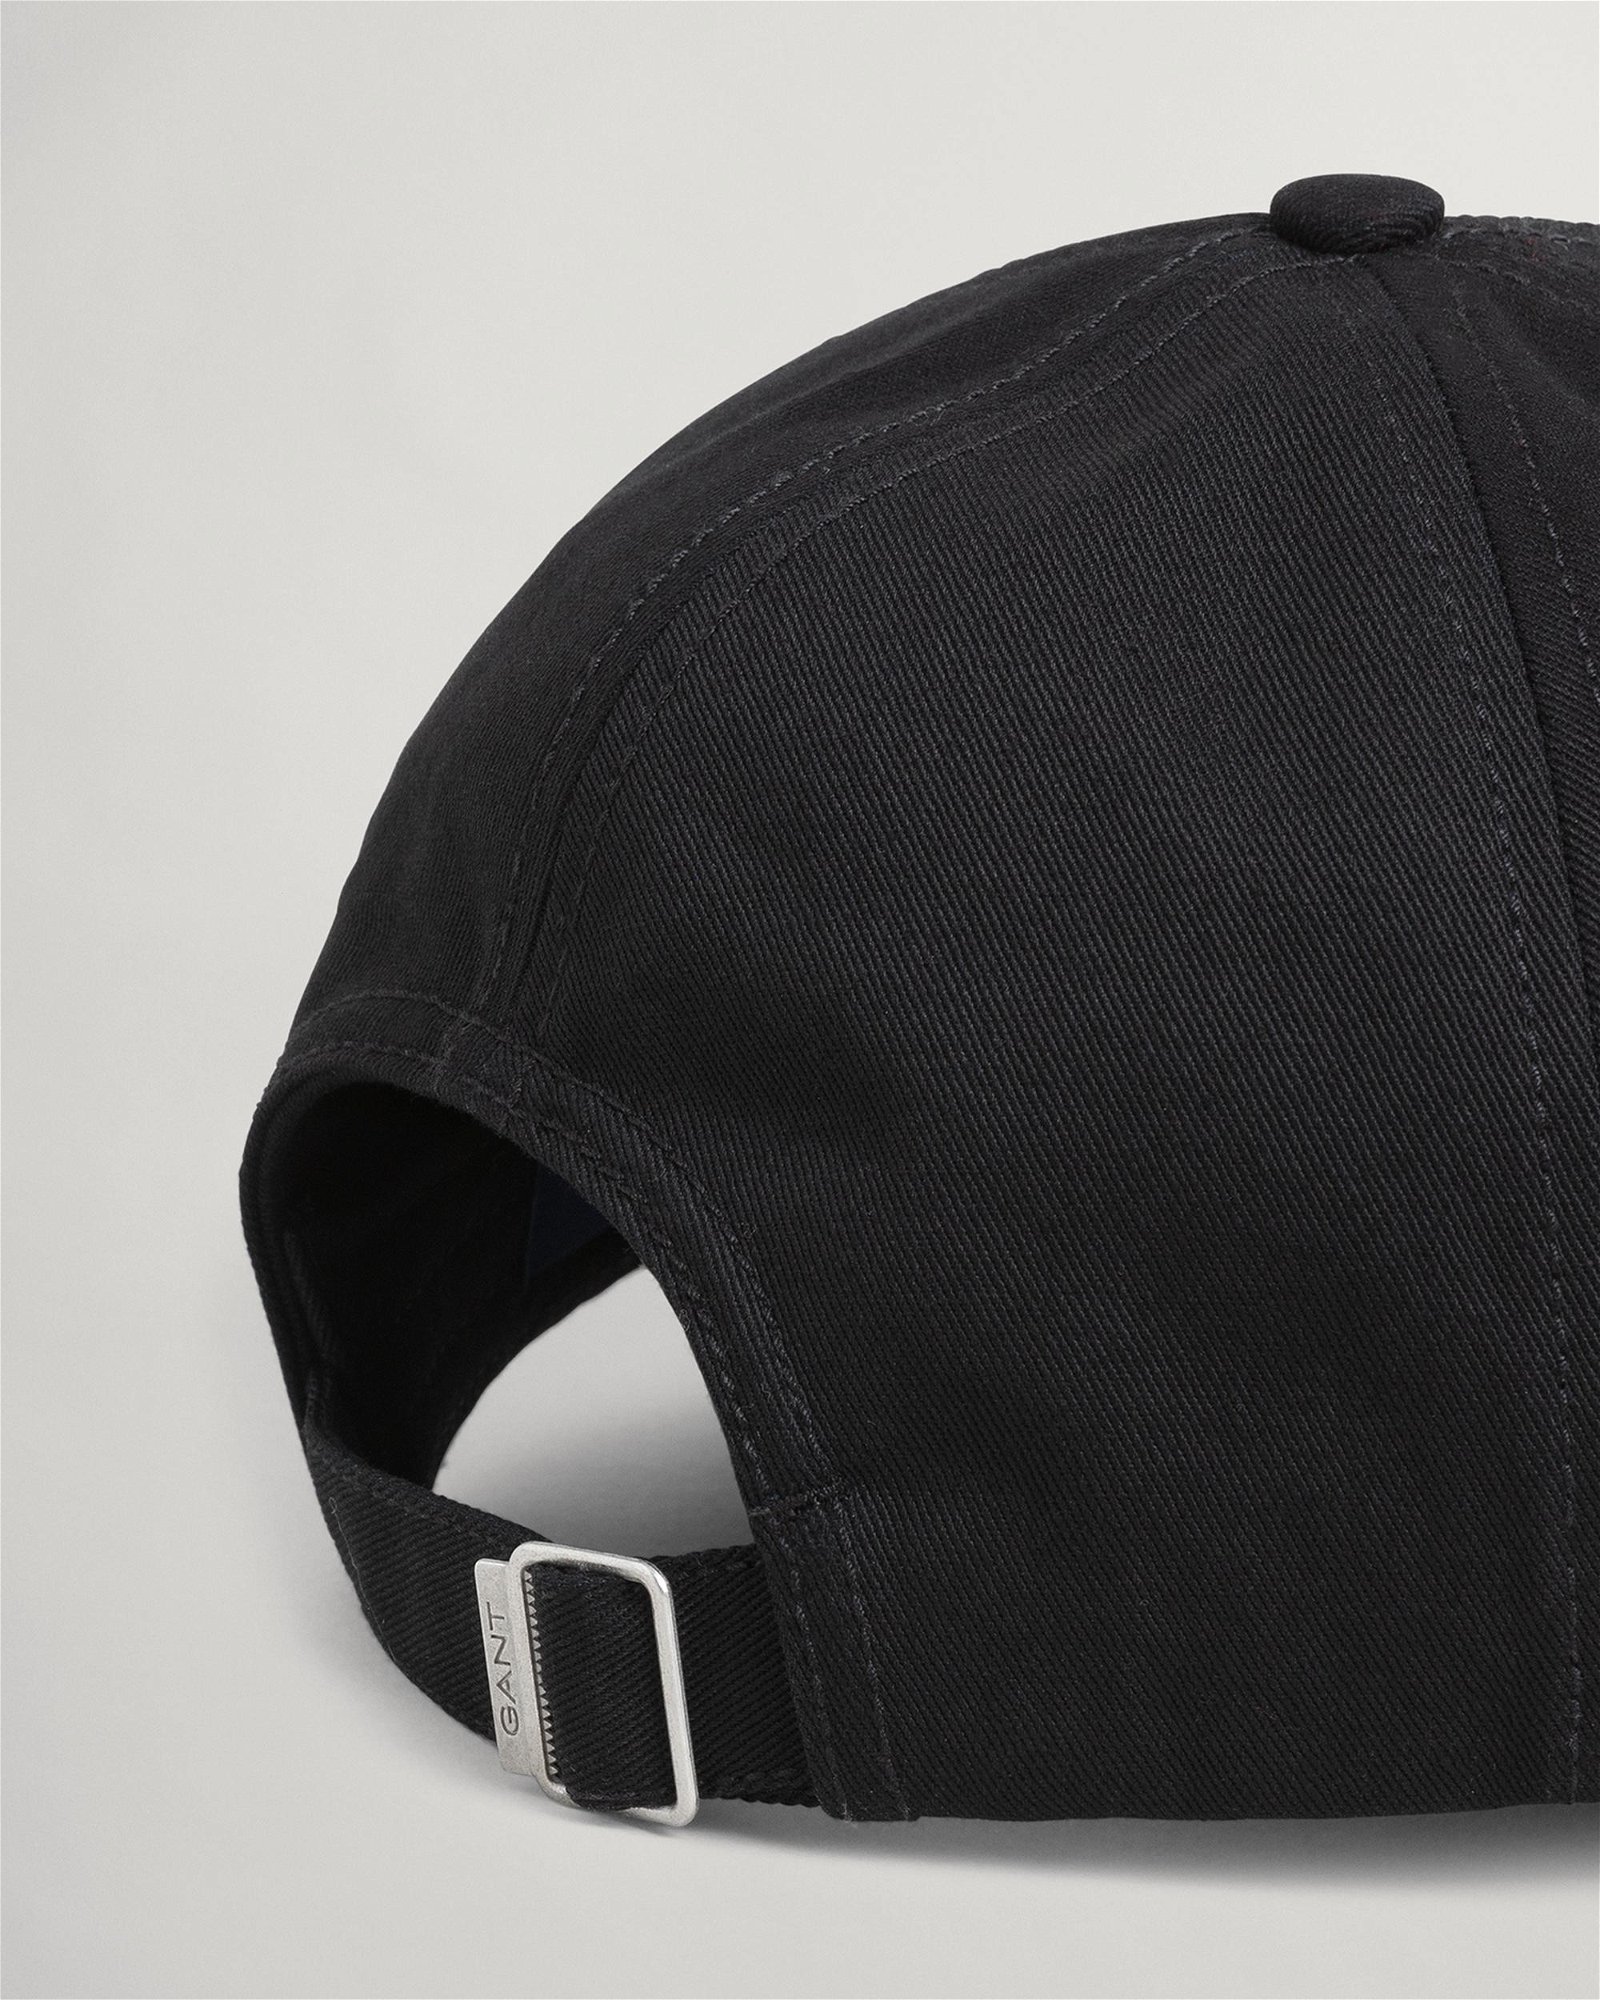 Gant Unisex Siyah Şapka